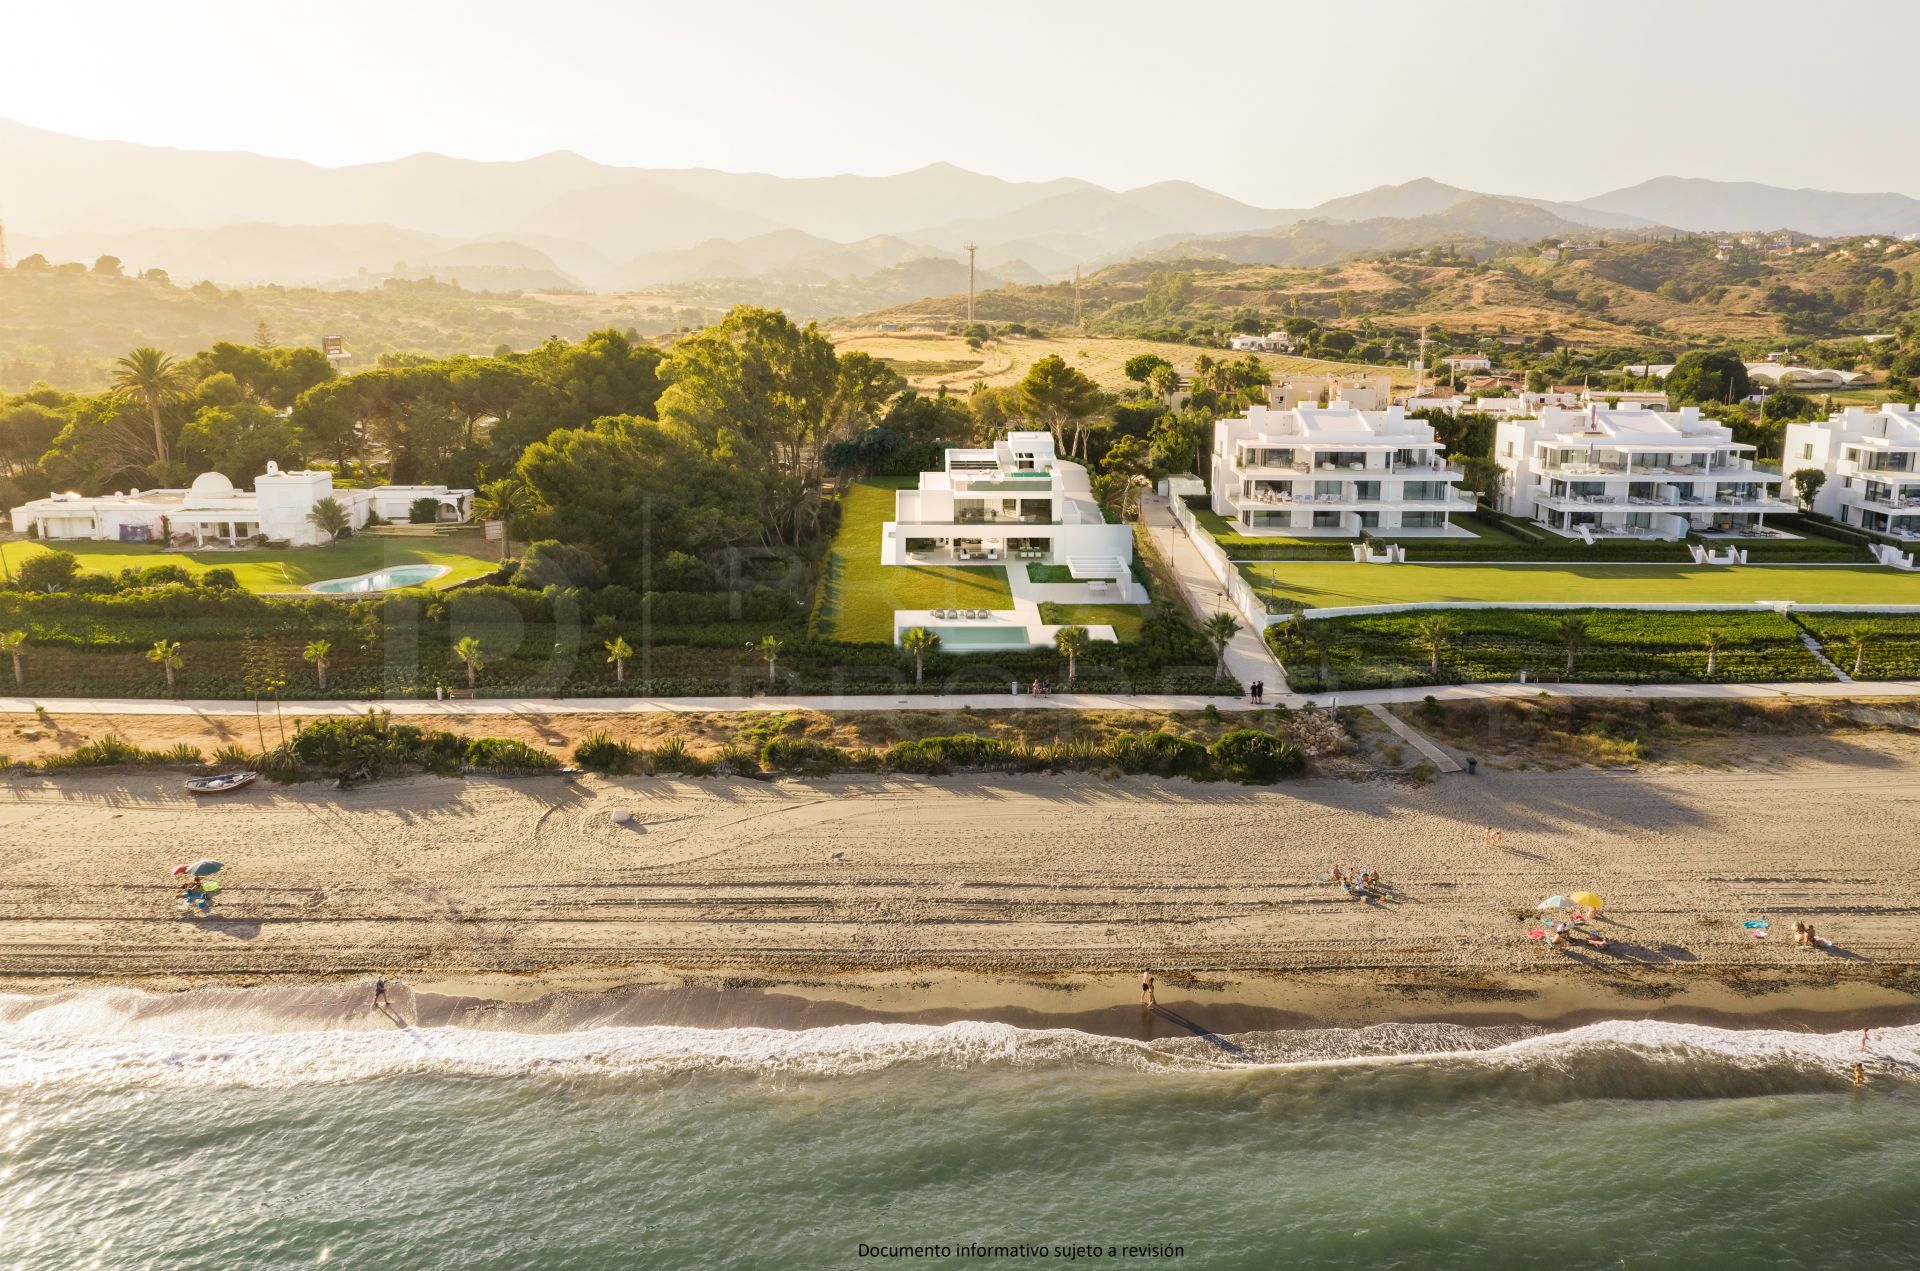 Extraordinary beachfront villa on the New Golden Mile